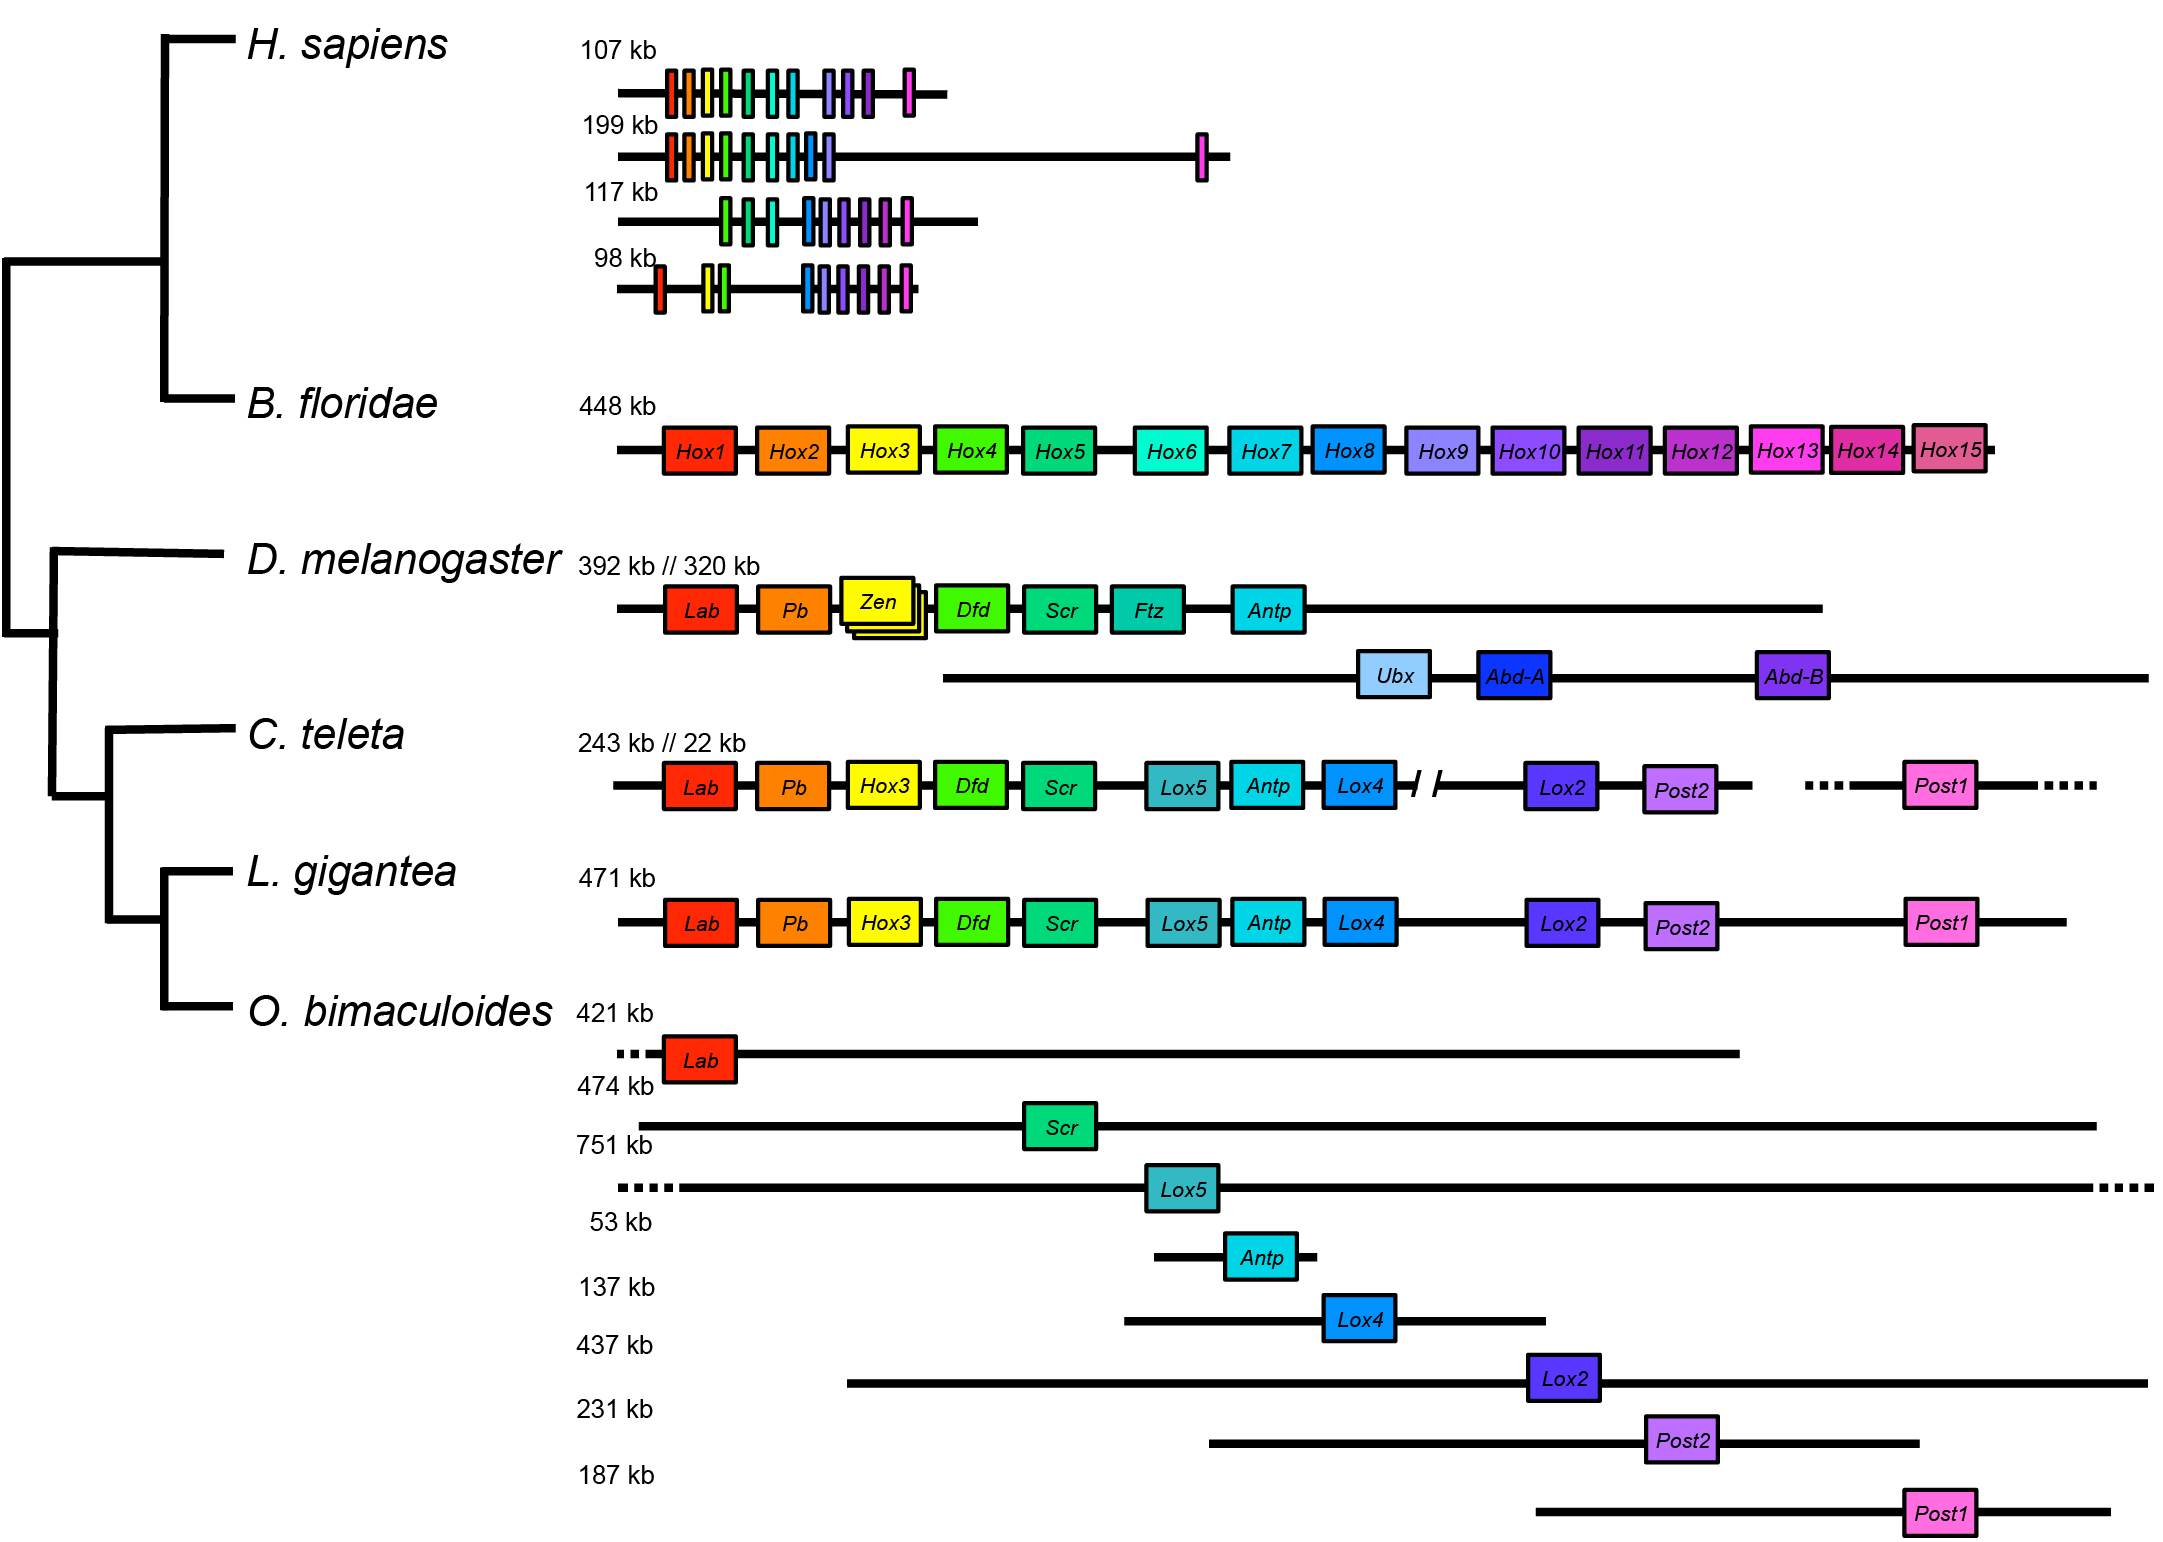 脊椎動物及びさまざまな無脊椎動物の染色体上におけるHox遺伝子の分布図